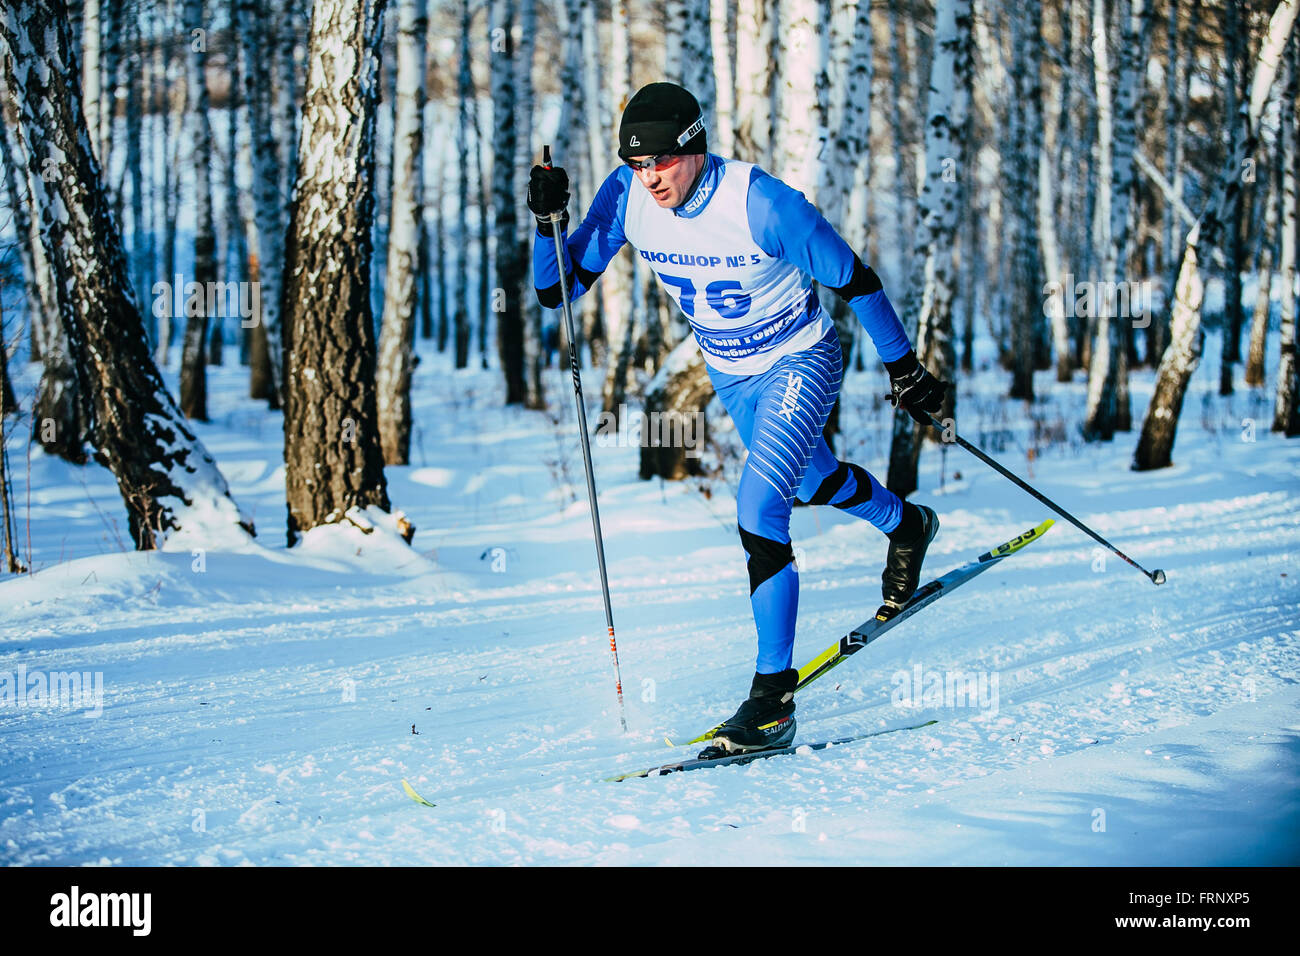 Libre de jeune athlète au cours de ski course en style classique en bois Championnat de France Ski de fond Banque D'Images